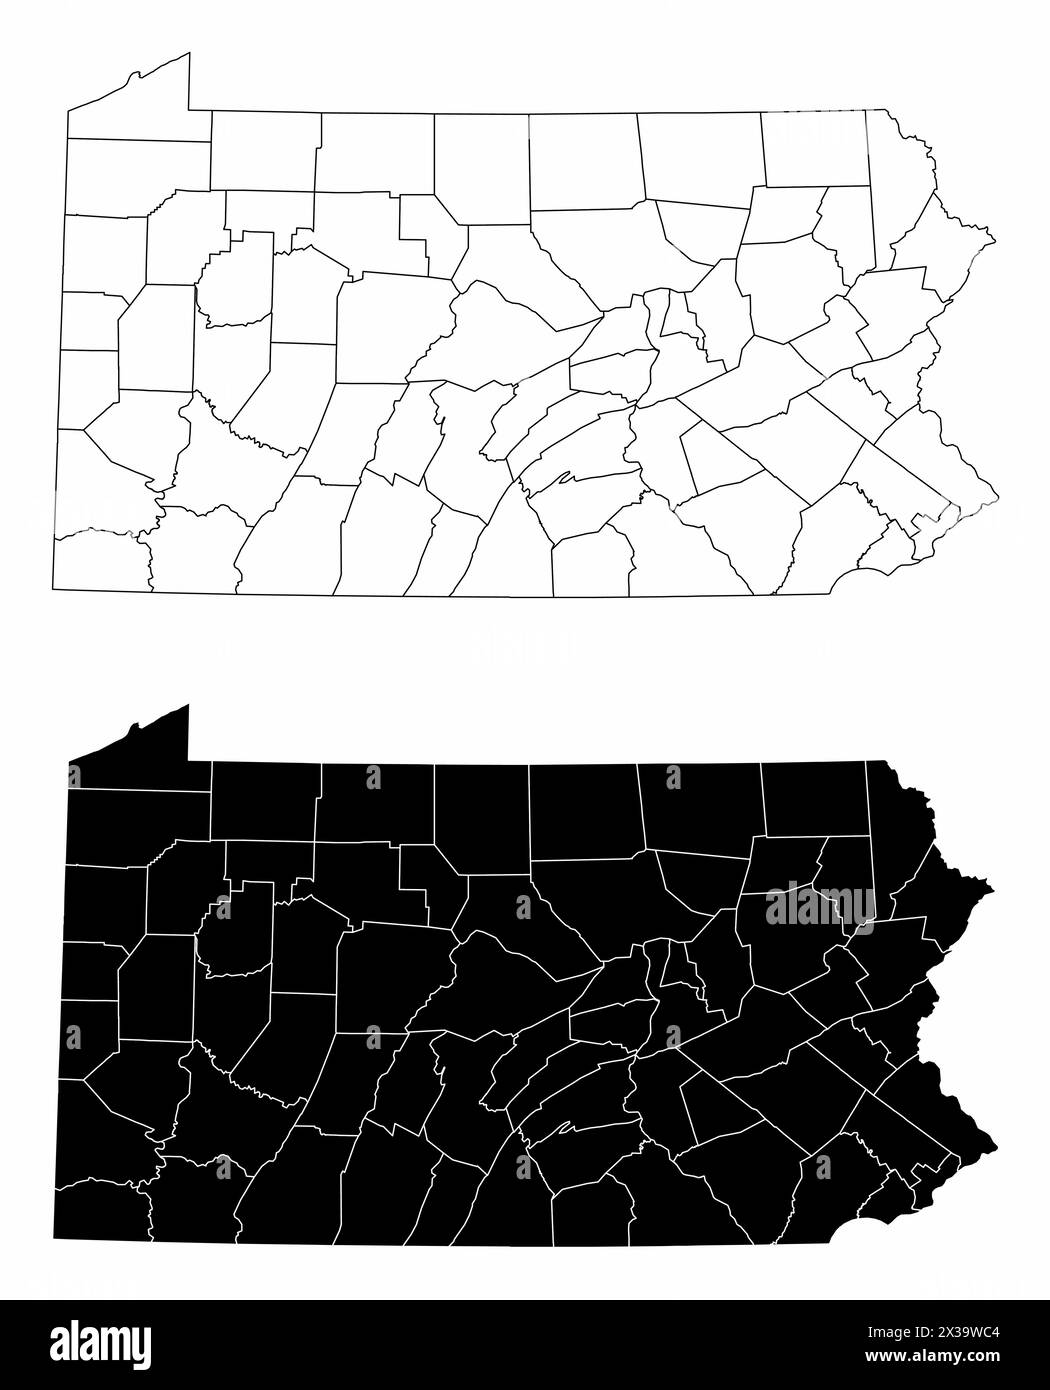 Les cartes administratives en noir et blanc de Pennsylvanie, USA Illustration de Vecteur